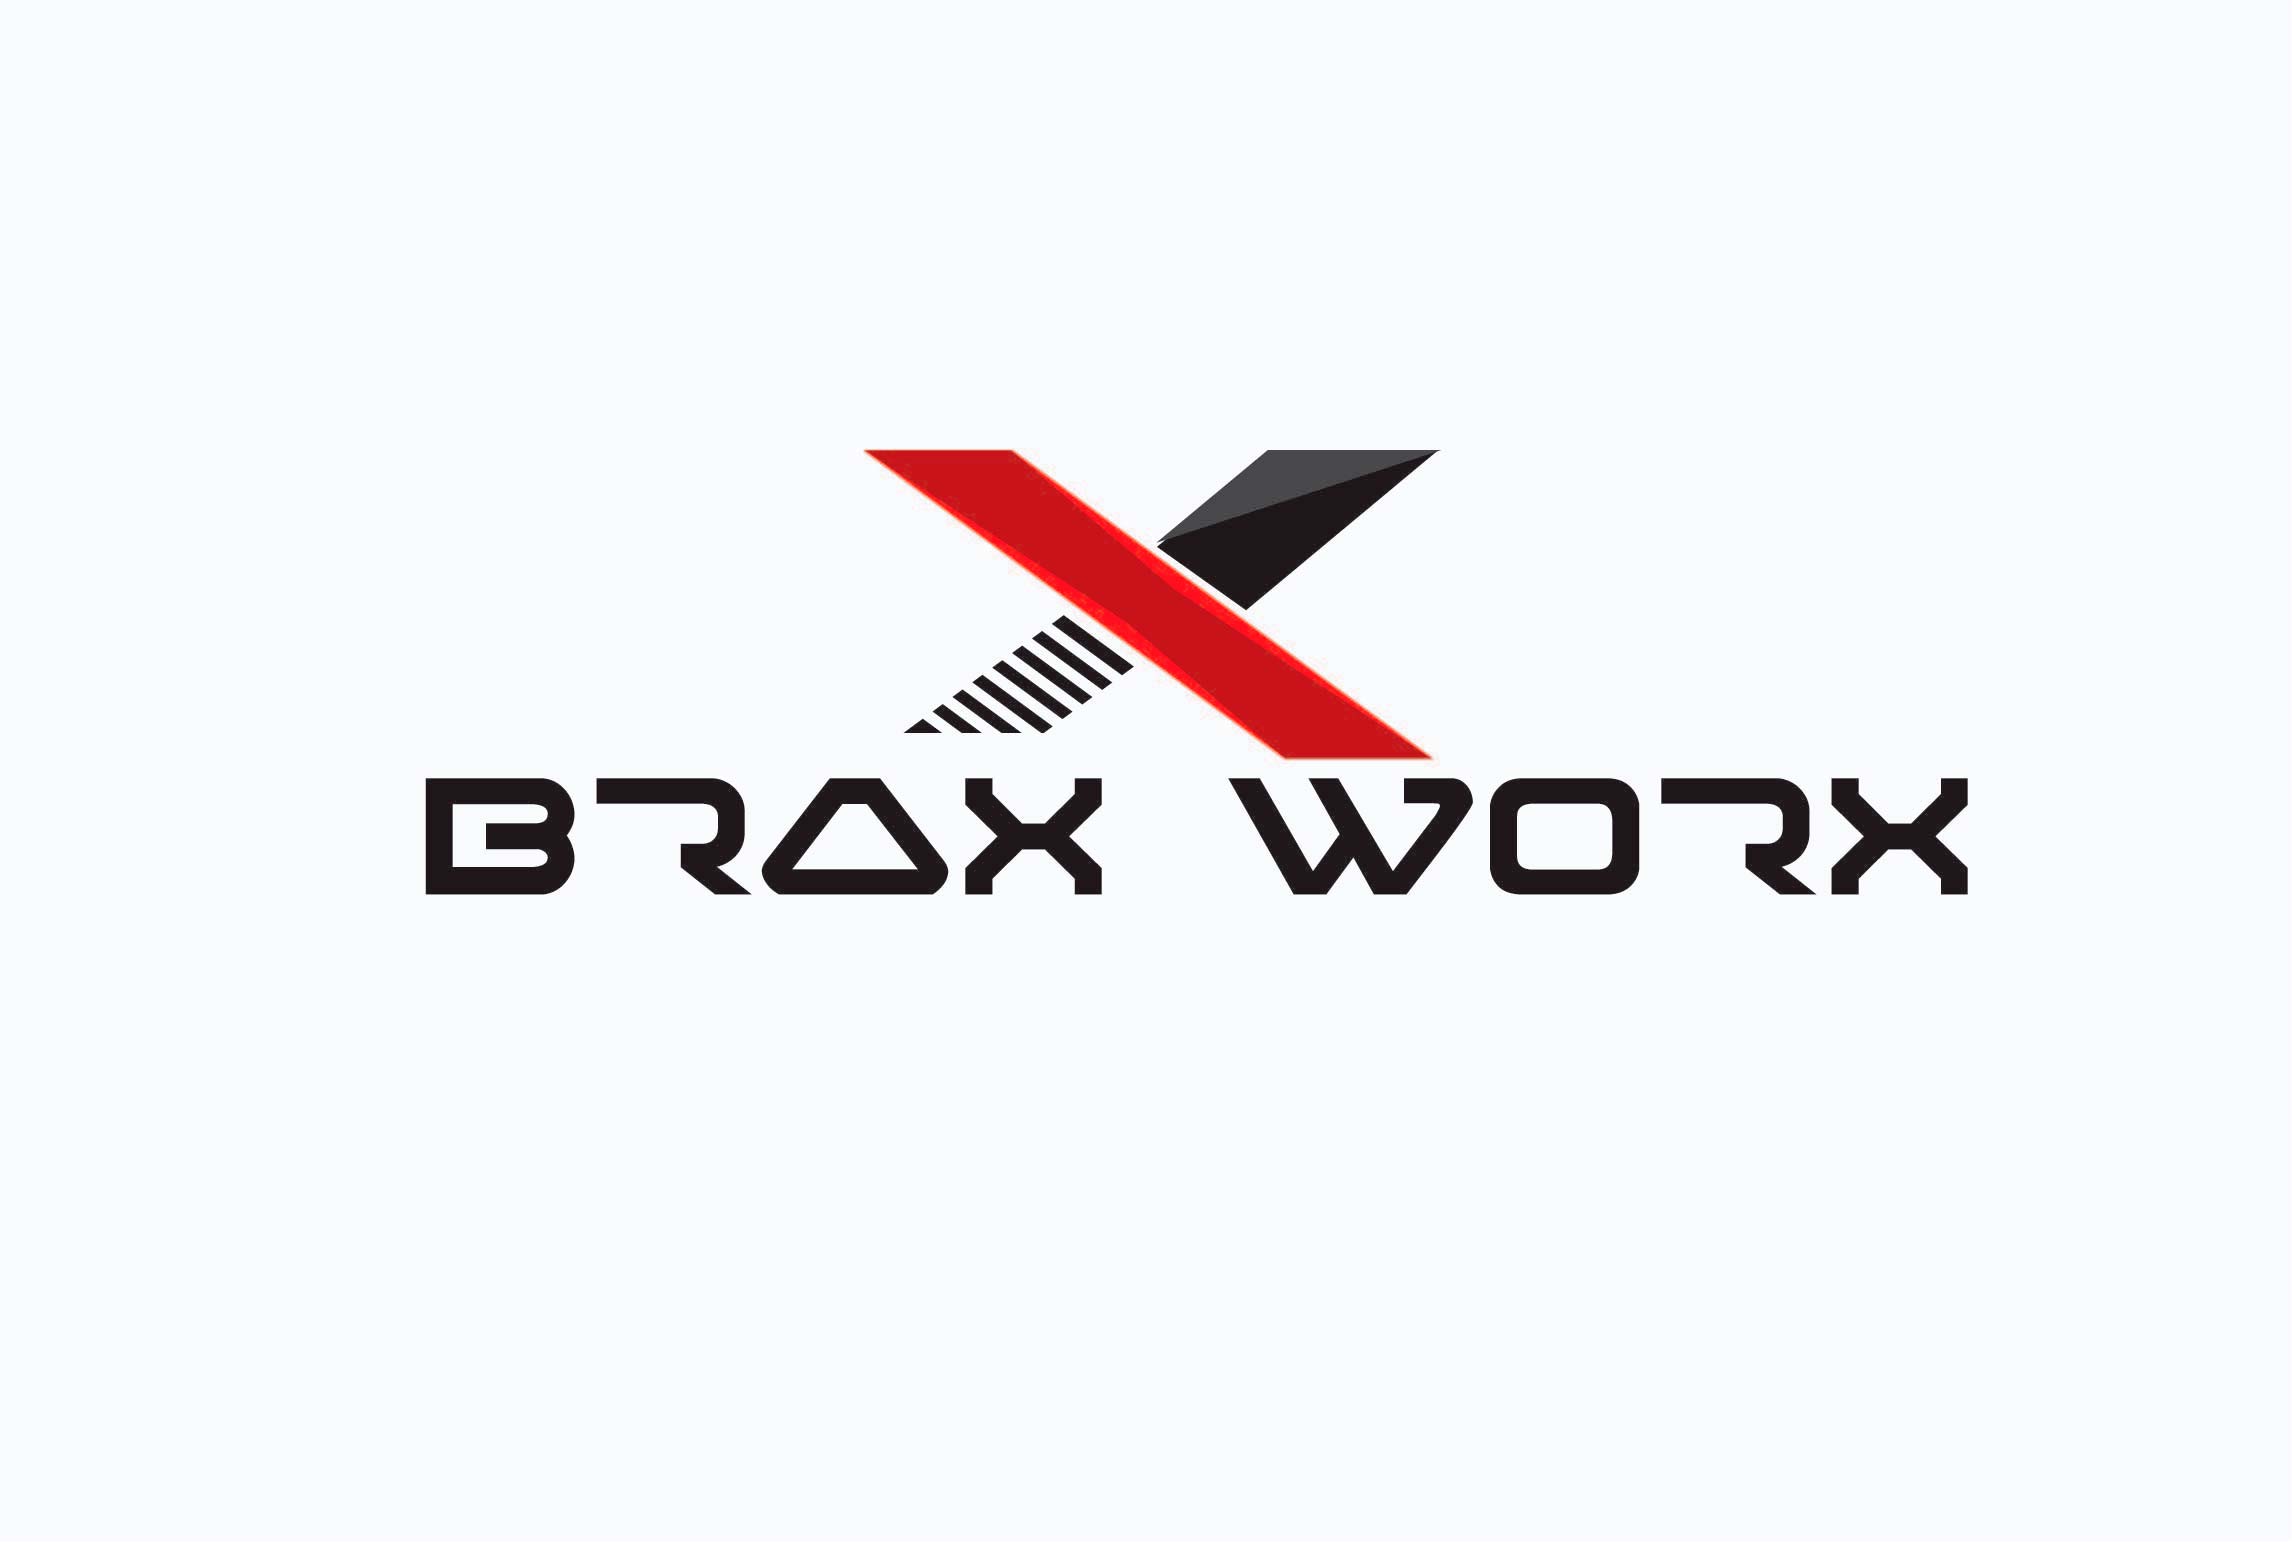 Braxworx